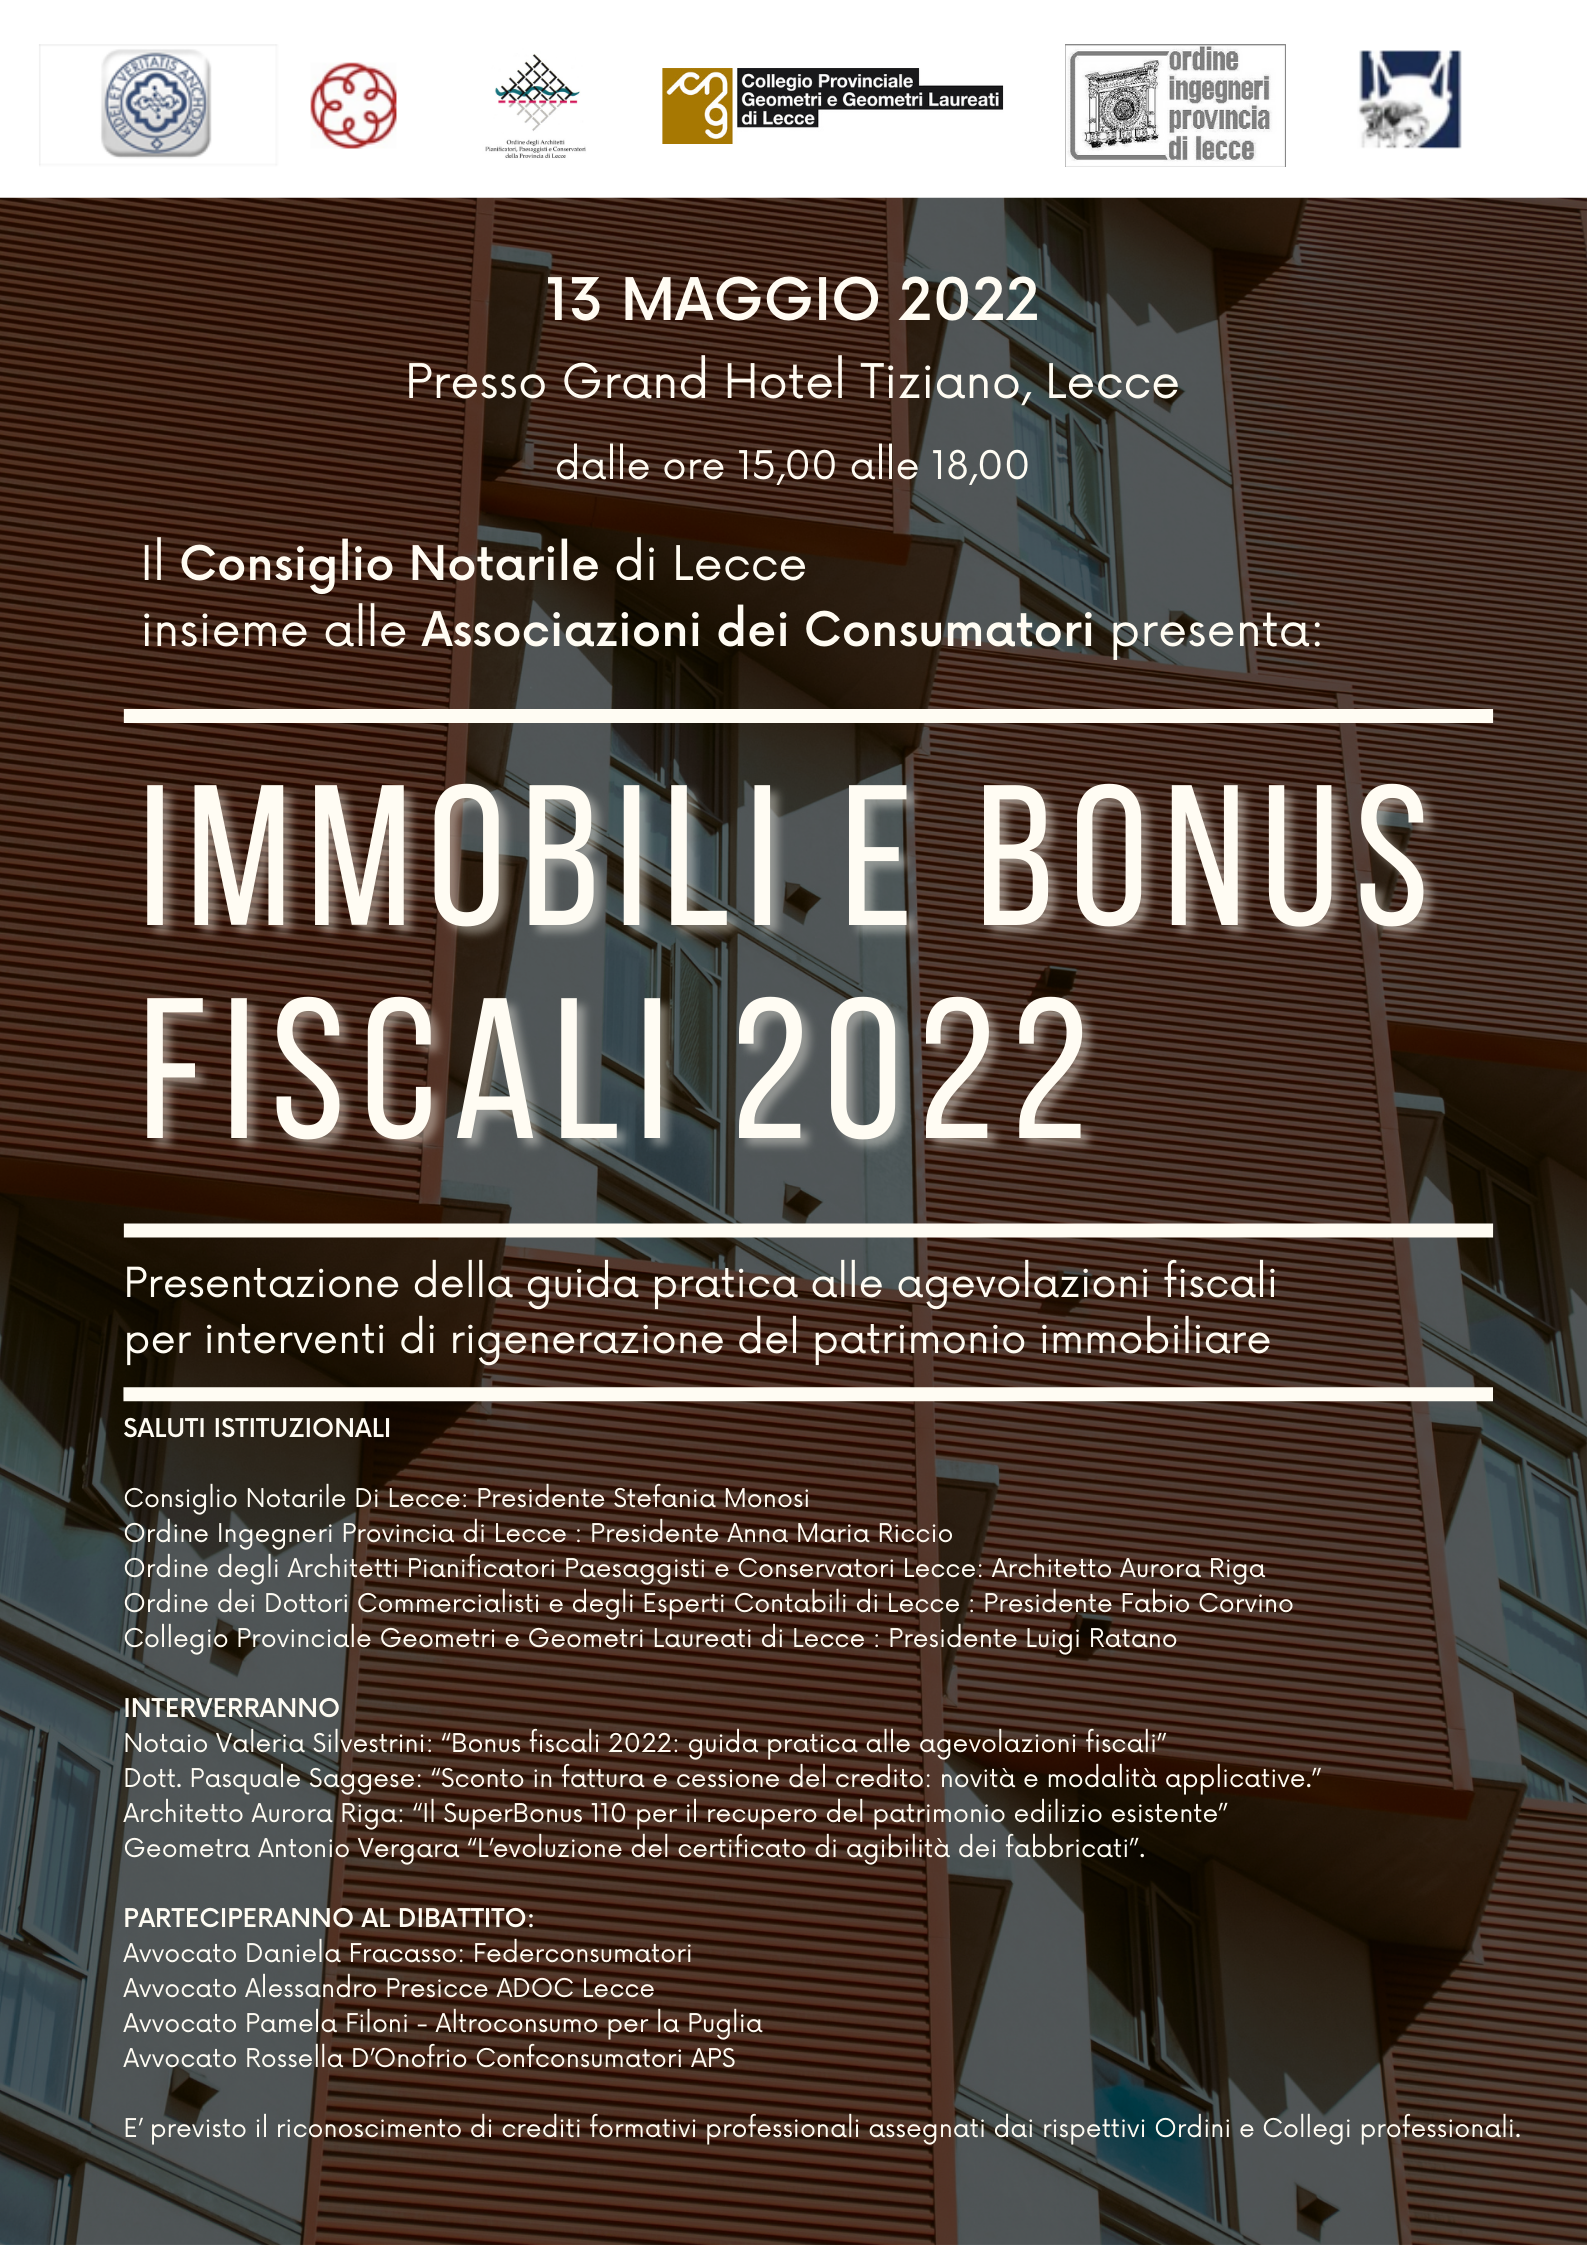 Consiglio Notarile di Lecce – Evento “IMMOBILI E BONUS FISCALI 2022” – 13 maggio 2022